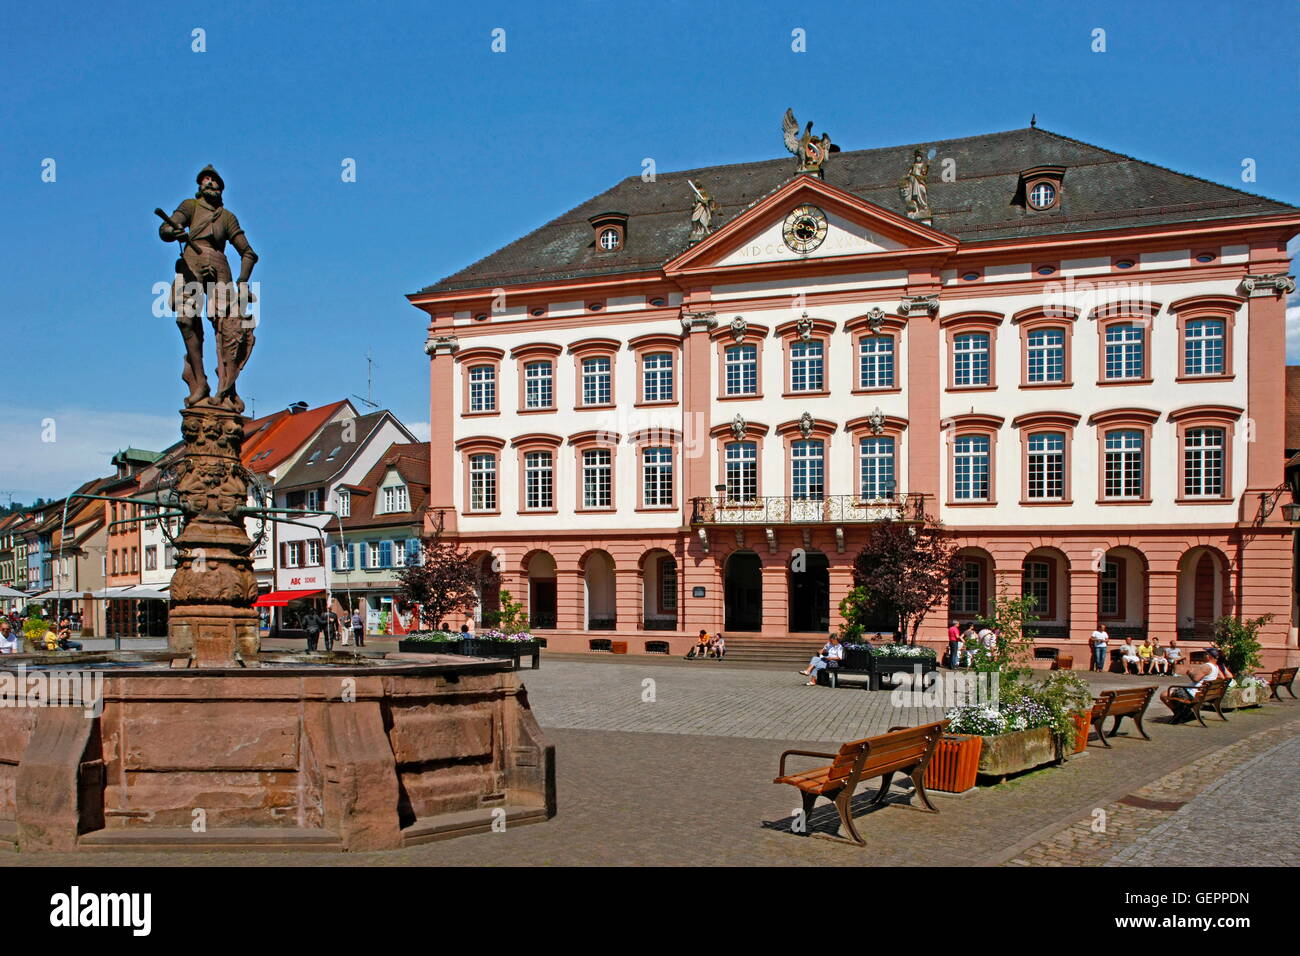 Geographie / Reisen, Deutschland, Baden-Württemberg, eine der Kinzig Gengenbach, Ortenaukreis, Rathaus, gebaut 1784 durch Viktor Kretz, Stadt-Brunnen mit Ritter, Stockfoto